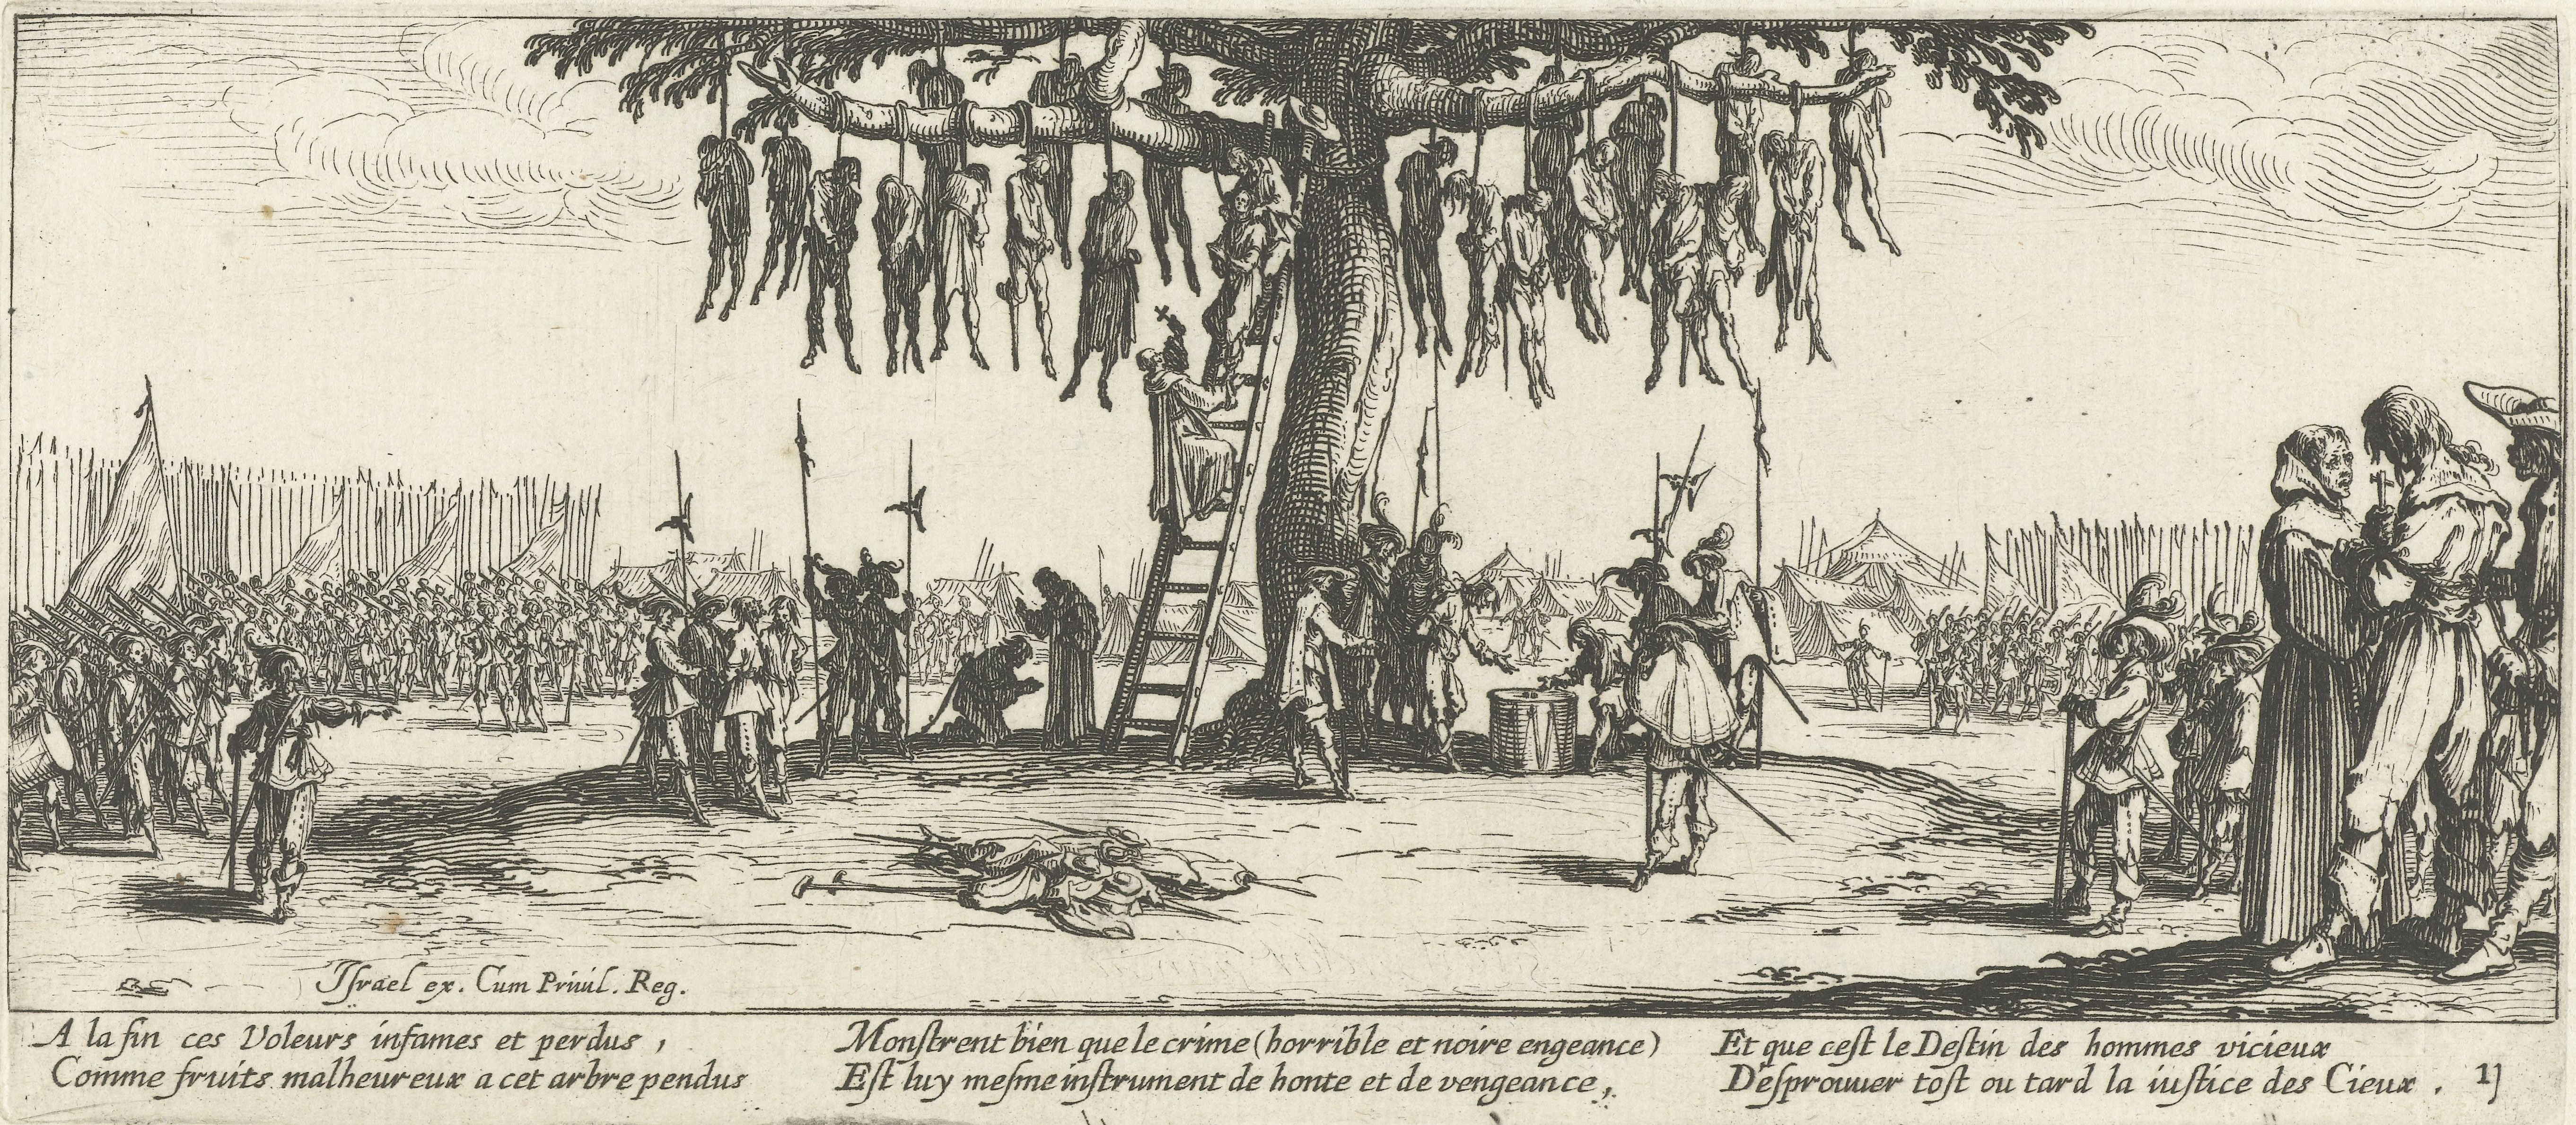 雅克·克洛（Jaques Callot）的画作《绞刑》（1633）展现了三十年战争的残酷。